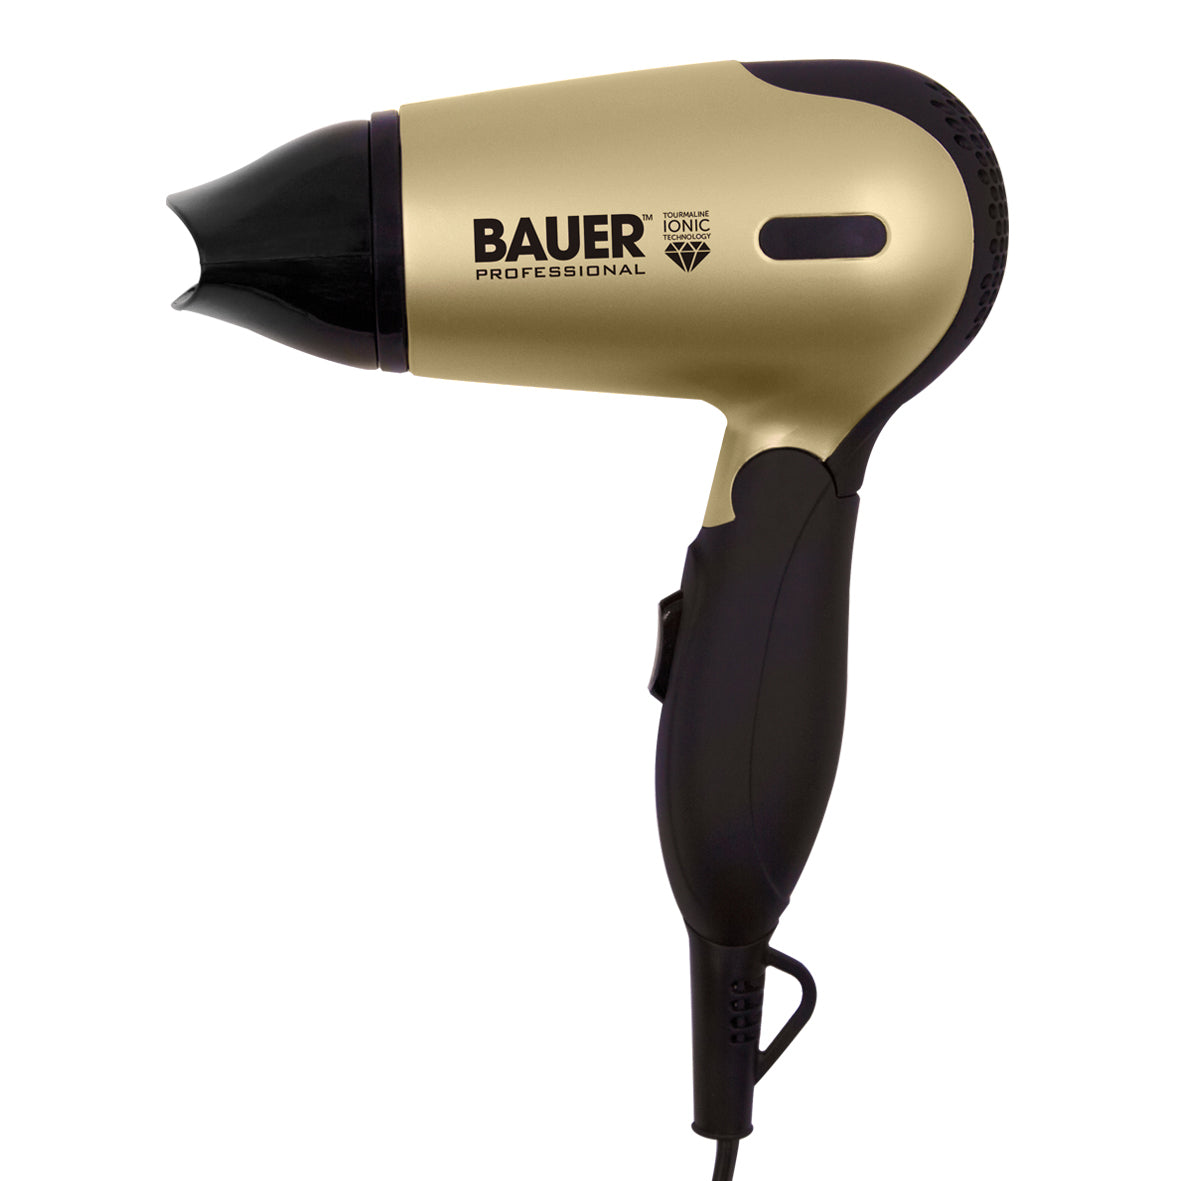 Bauer Tourmaline Travel Hairdryer Set - Black  | TJ Hughes